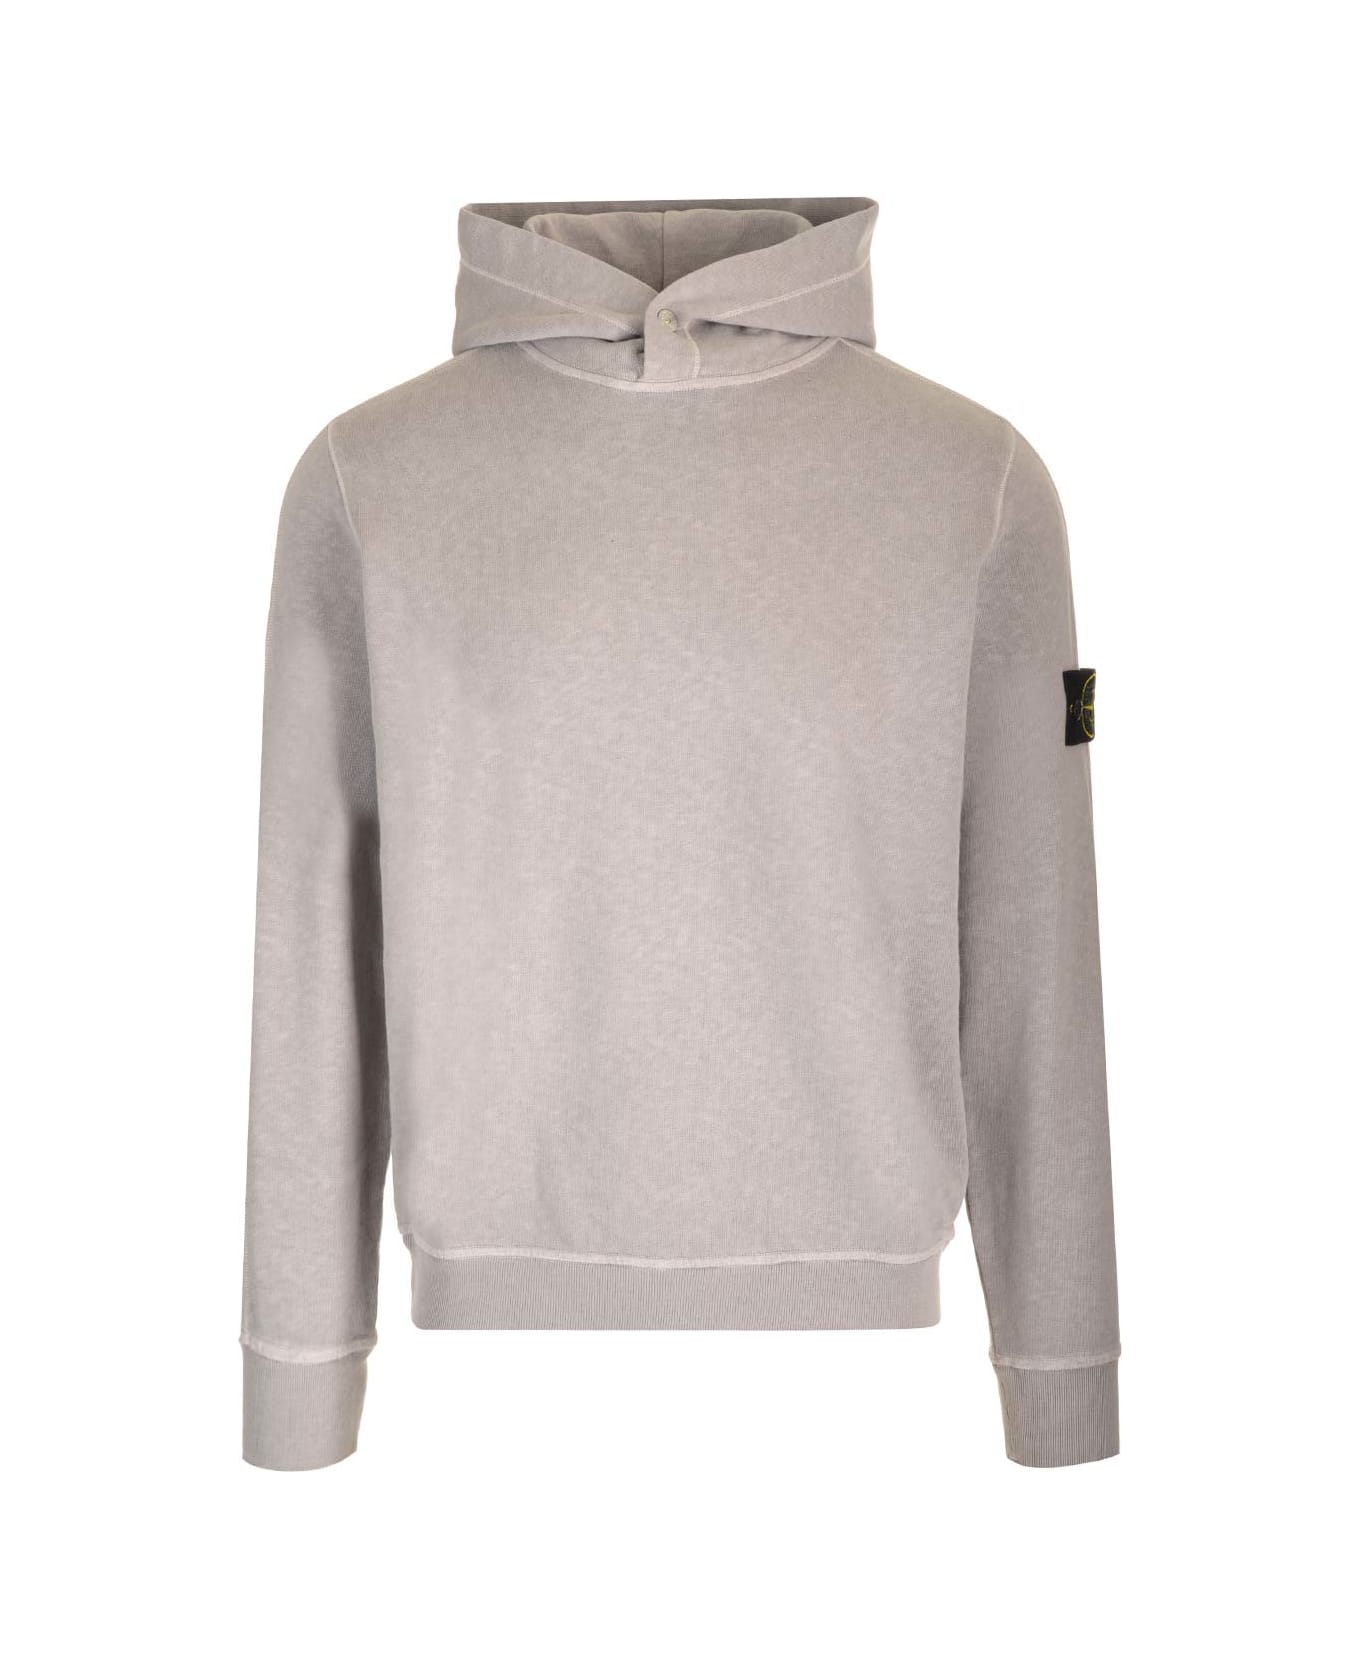 Stone Island Hooded Sweatshirt - Grey